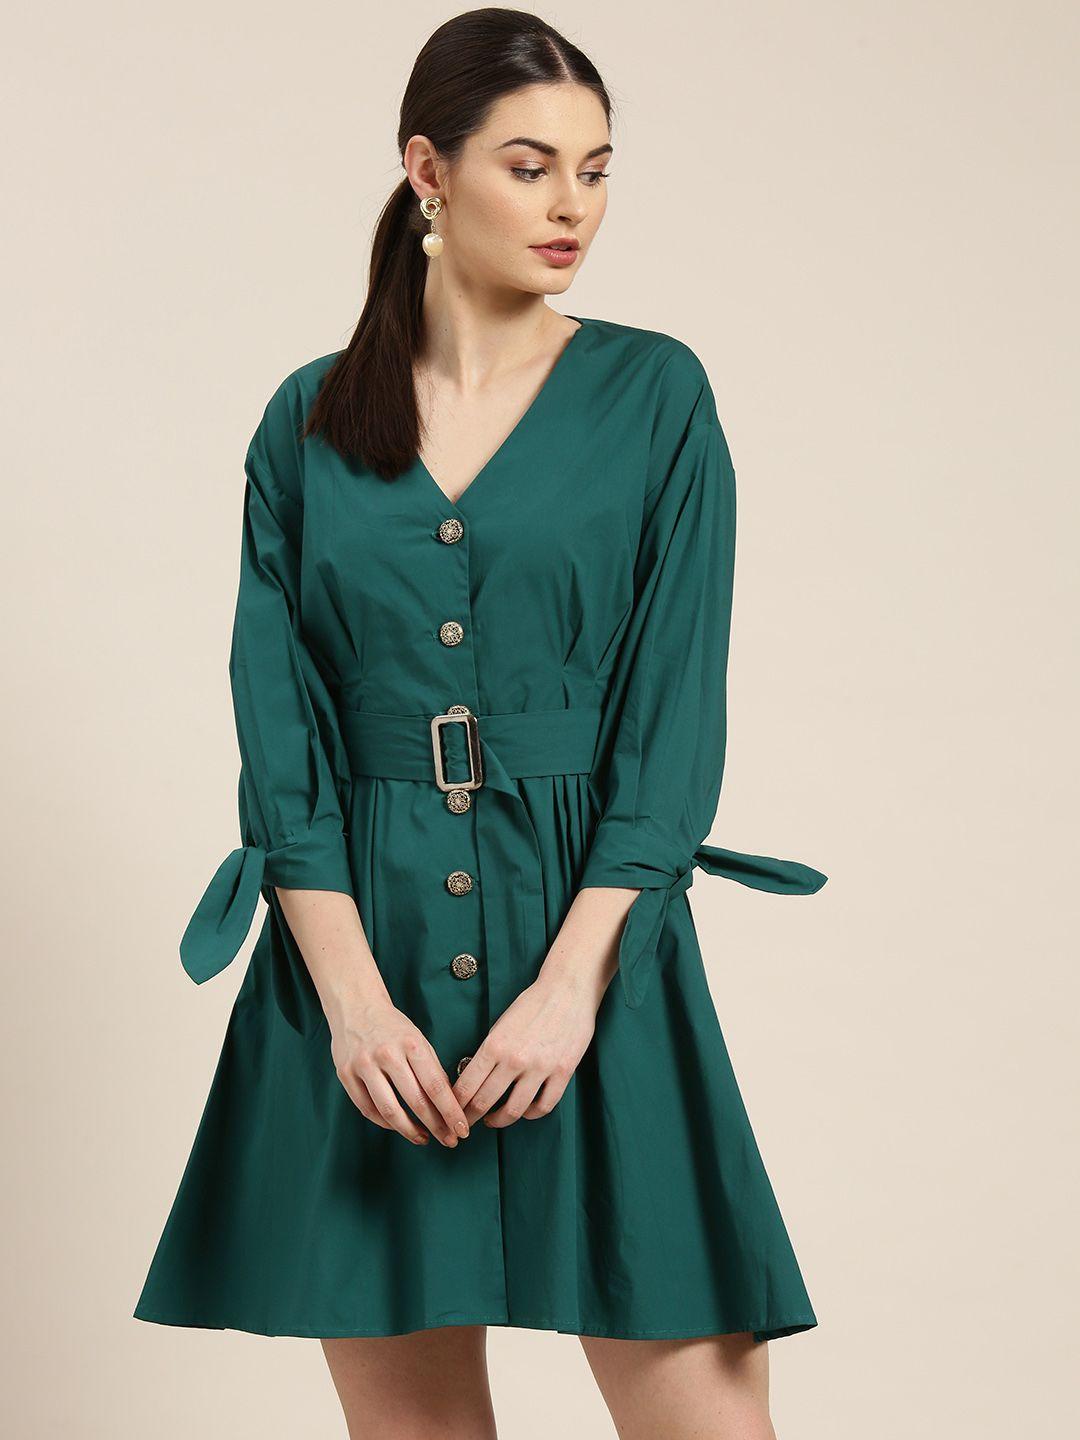 woowzerz women teal green solid a-line dress